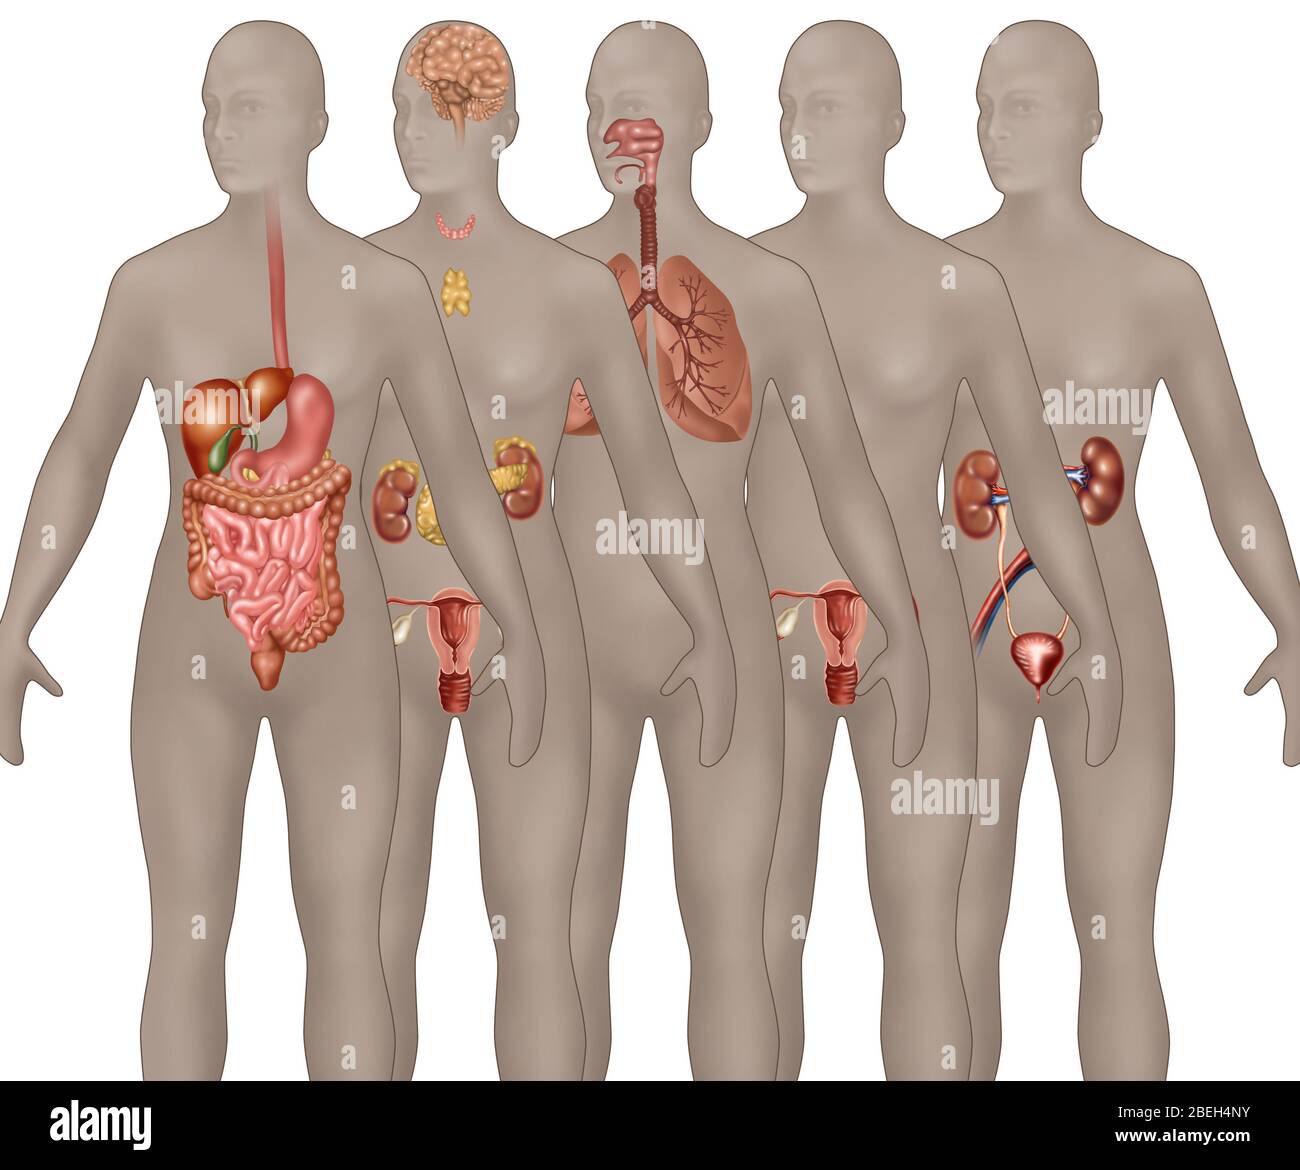 Sistemas de órganos ilustrados en la anatomía femenina. Desde el primer plano hasta el fondo se muestran: Sistema digestivo, sistema endocrino, sistema respiratorio, sistema reproductor masculino y sistema urinario. Foto de stock